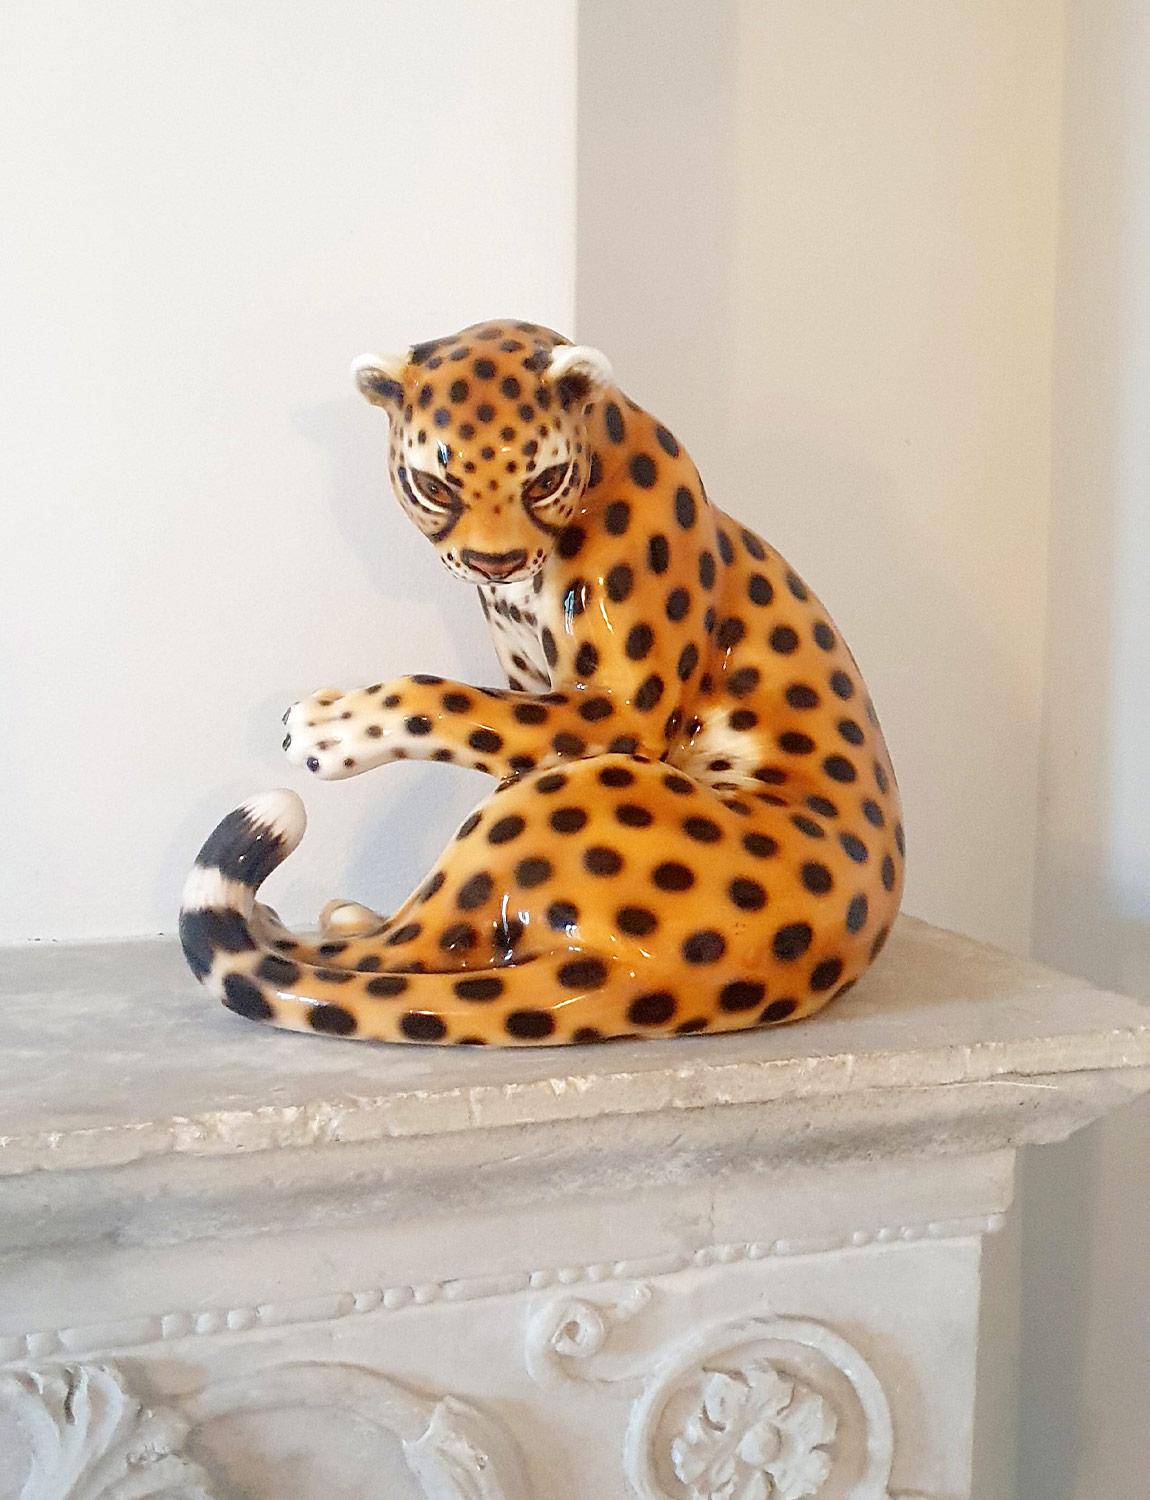 Un magnifique (et kitsch) léopard en céramique des années 1970 trouvé dans une maison privée à Narni, en Ombrie. Un propriétaire attentif a soigneusement préservé cette très jolie pièce. Les animaux sauvages et les chiens en céramique étaient très à